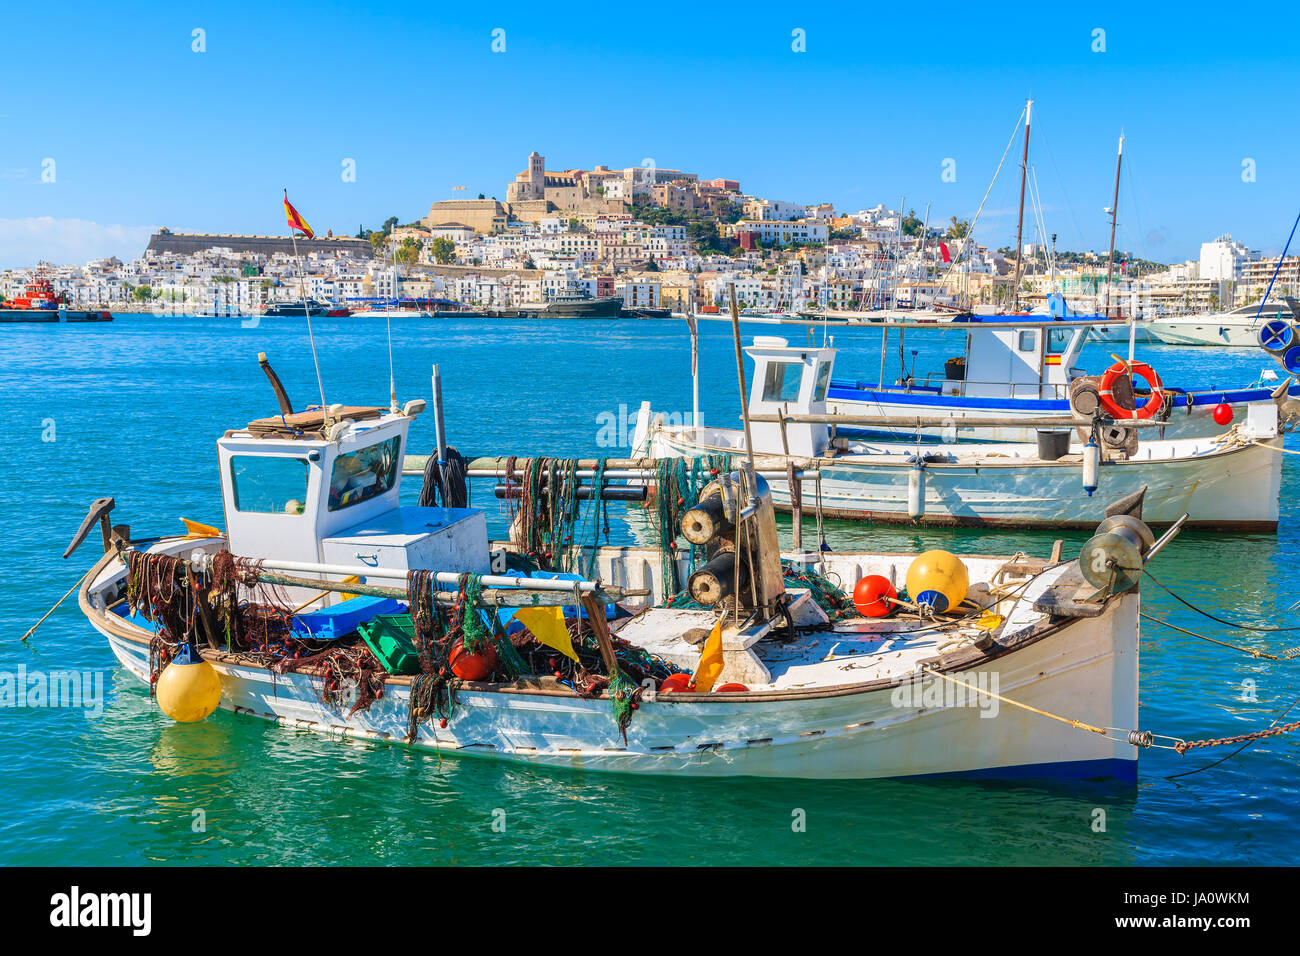 Fishing boats in Ibiza (Eivissa) port on Ibiza island, Spain Stock Photo